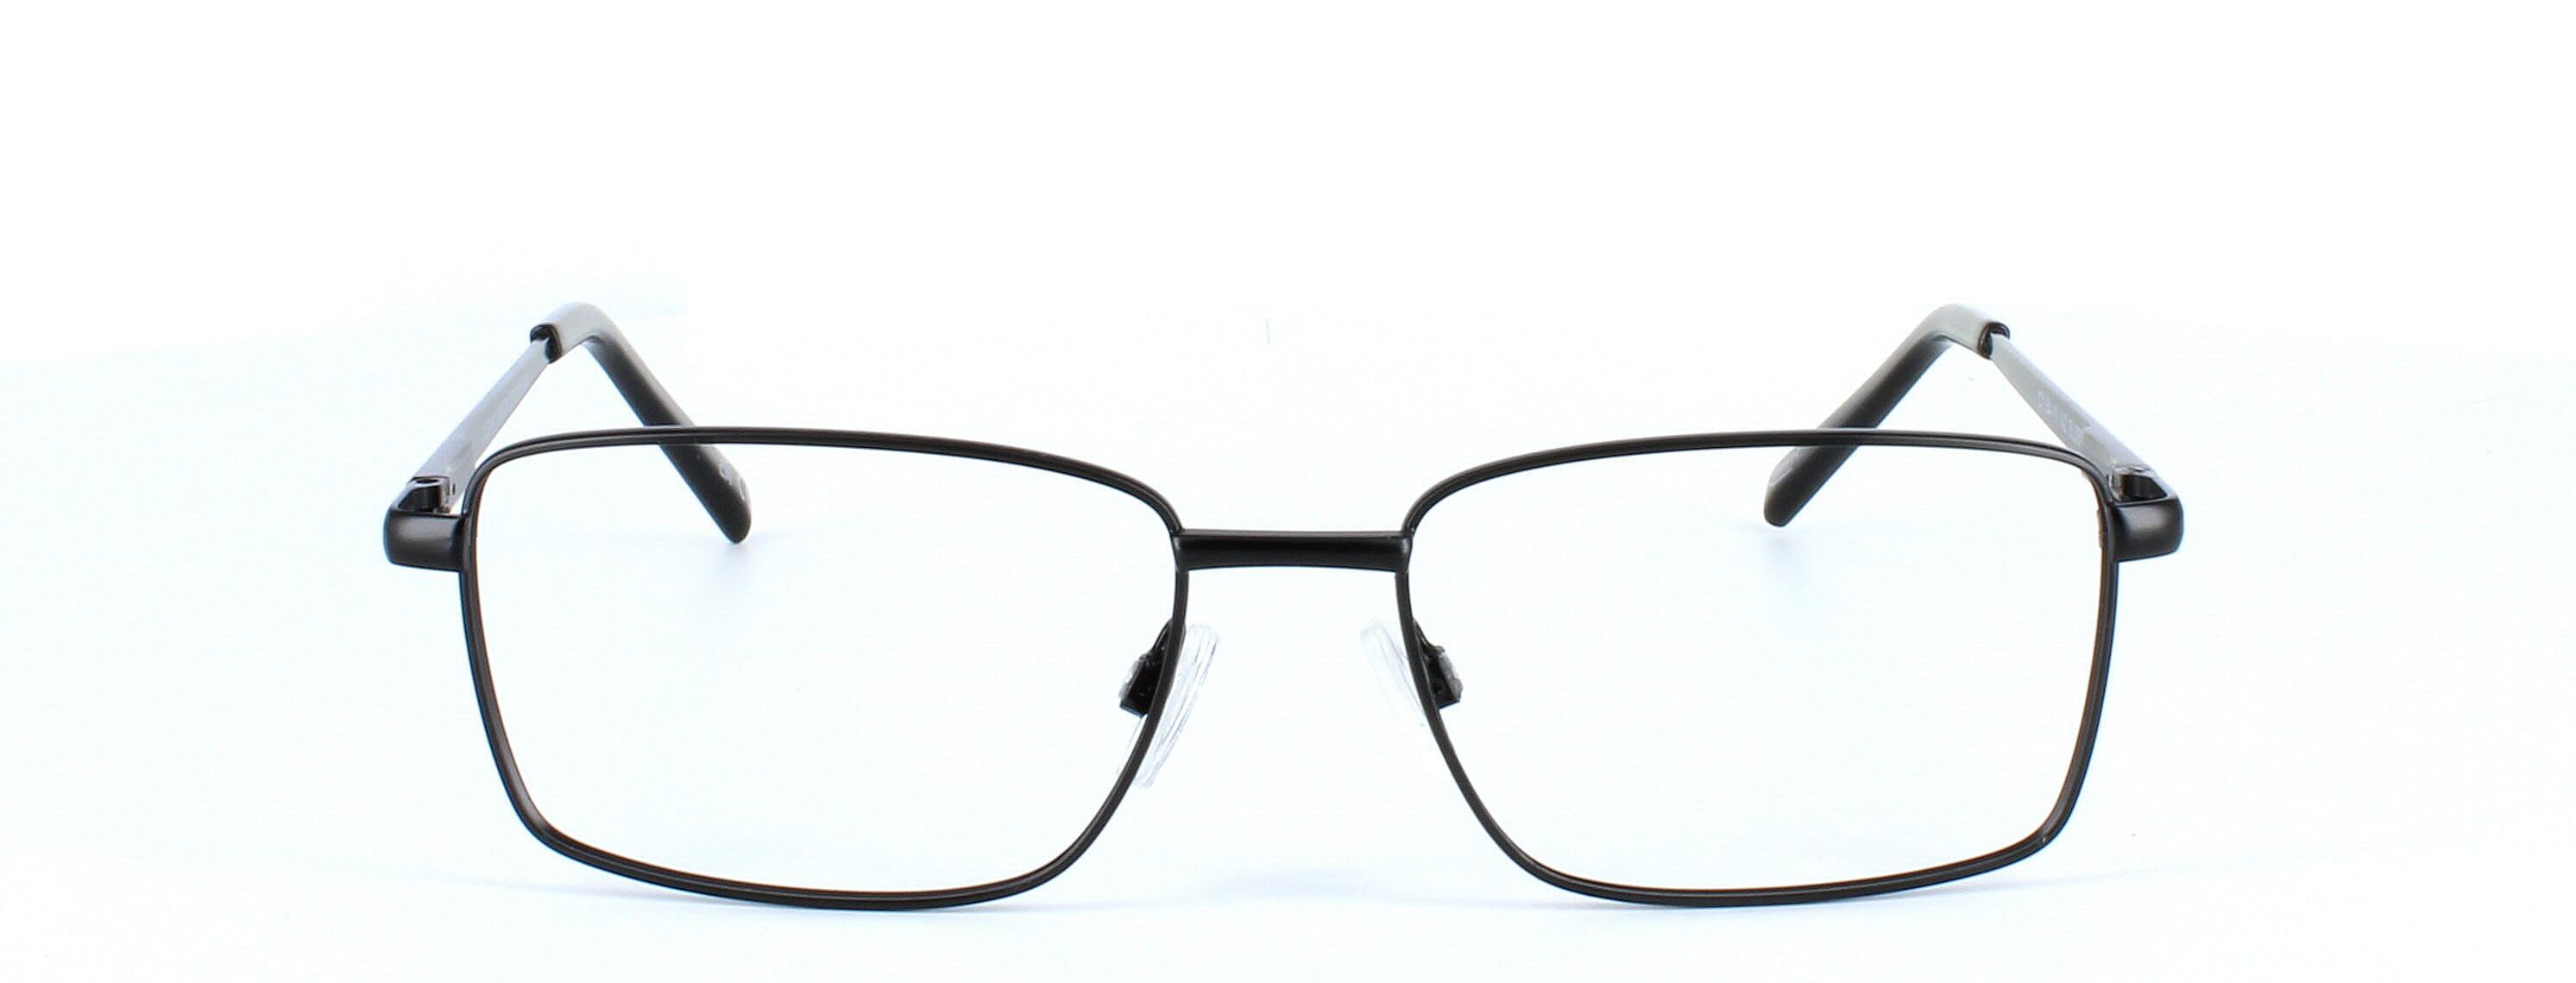 Tommy - Gent's full rim rectangular glasses frame here presented in matt black - image view 5